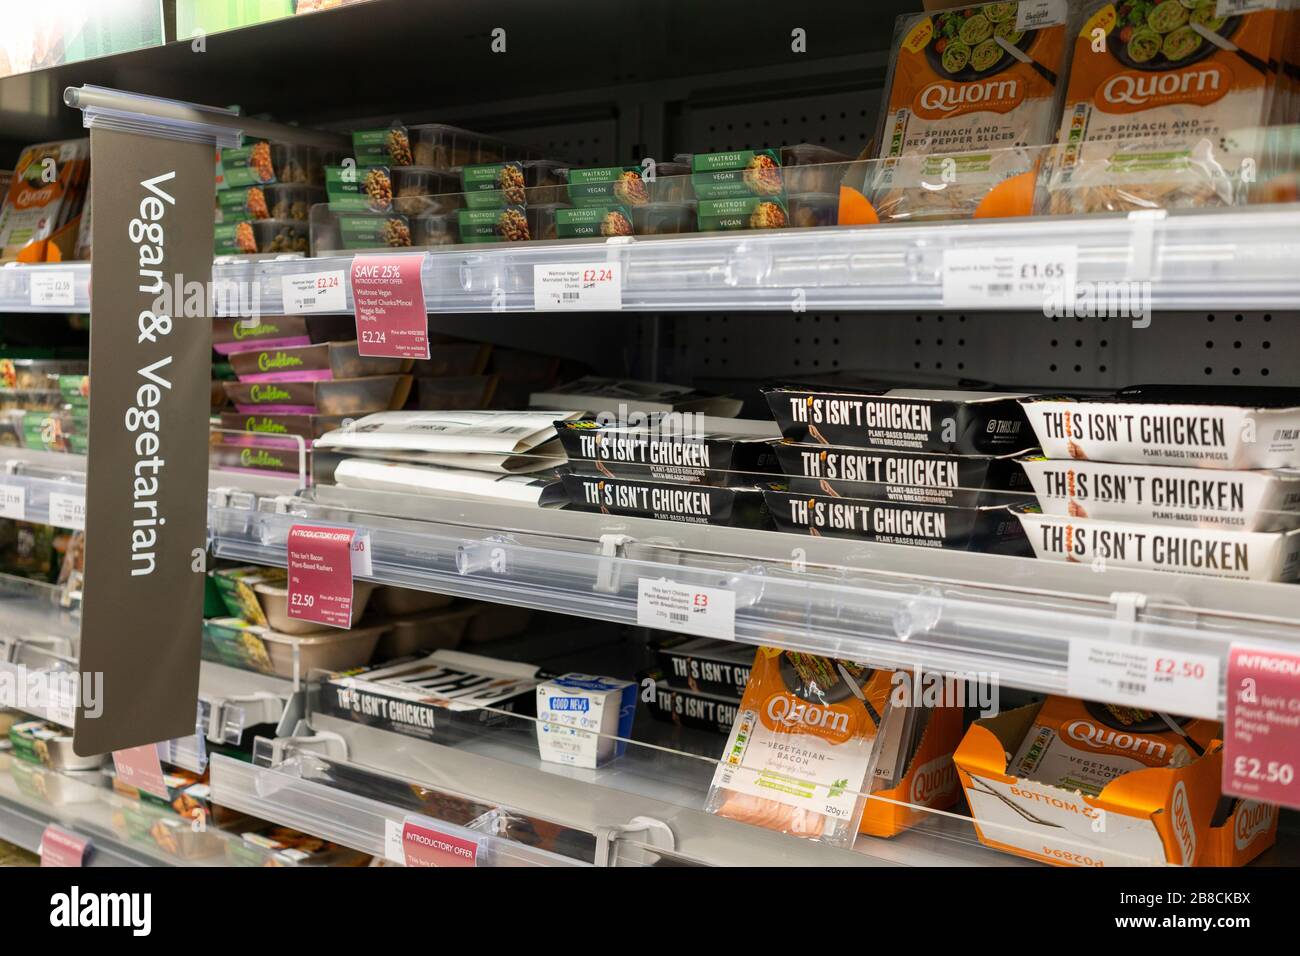 Cuisine végétalienne et végétarienne au supermarché Waitrose, Basingstoke, Angleterre. Concept: Véganisme, végétarisme, style de vie, régime alimentaire, industrie alimentaire Banque D'Images